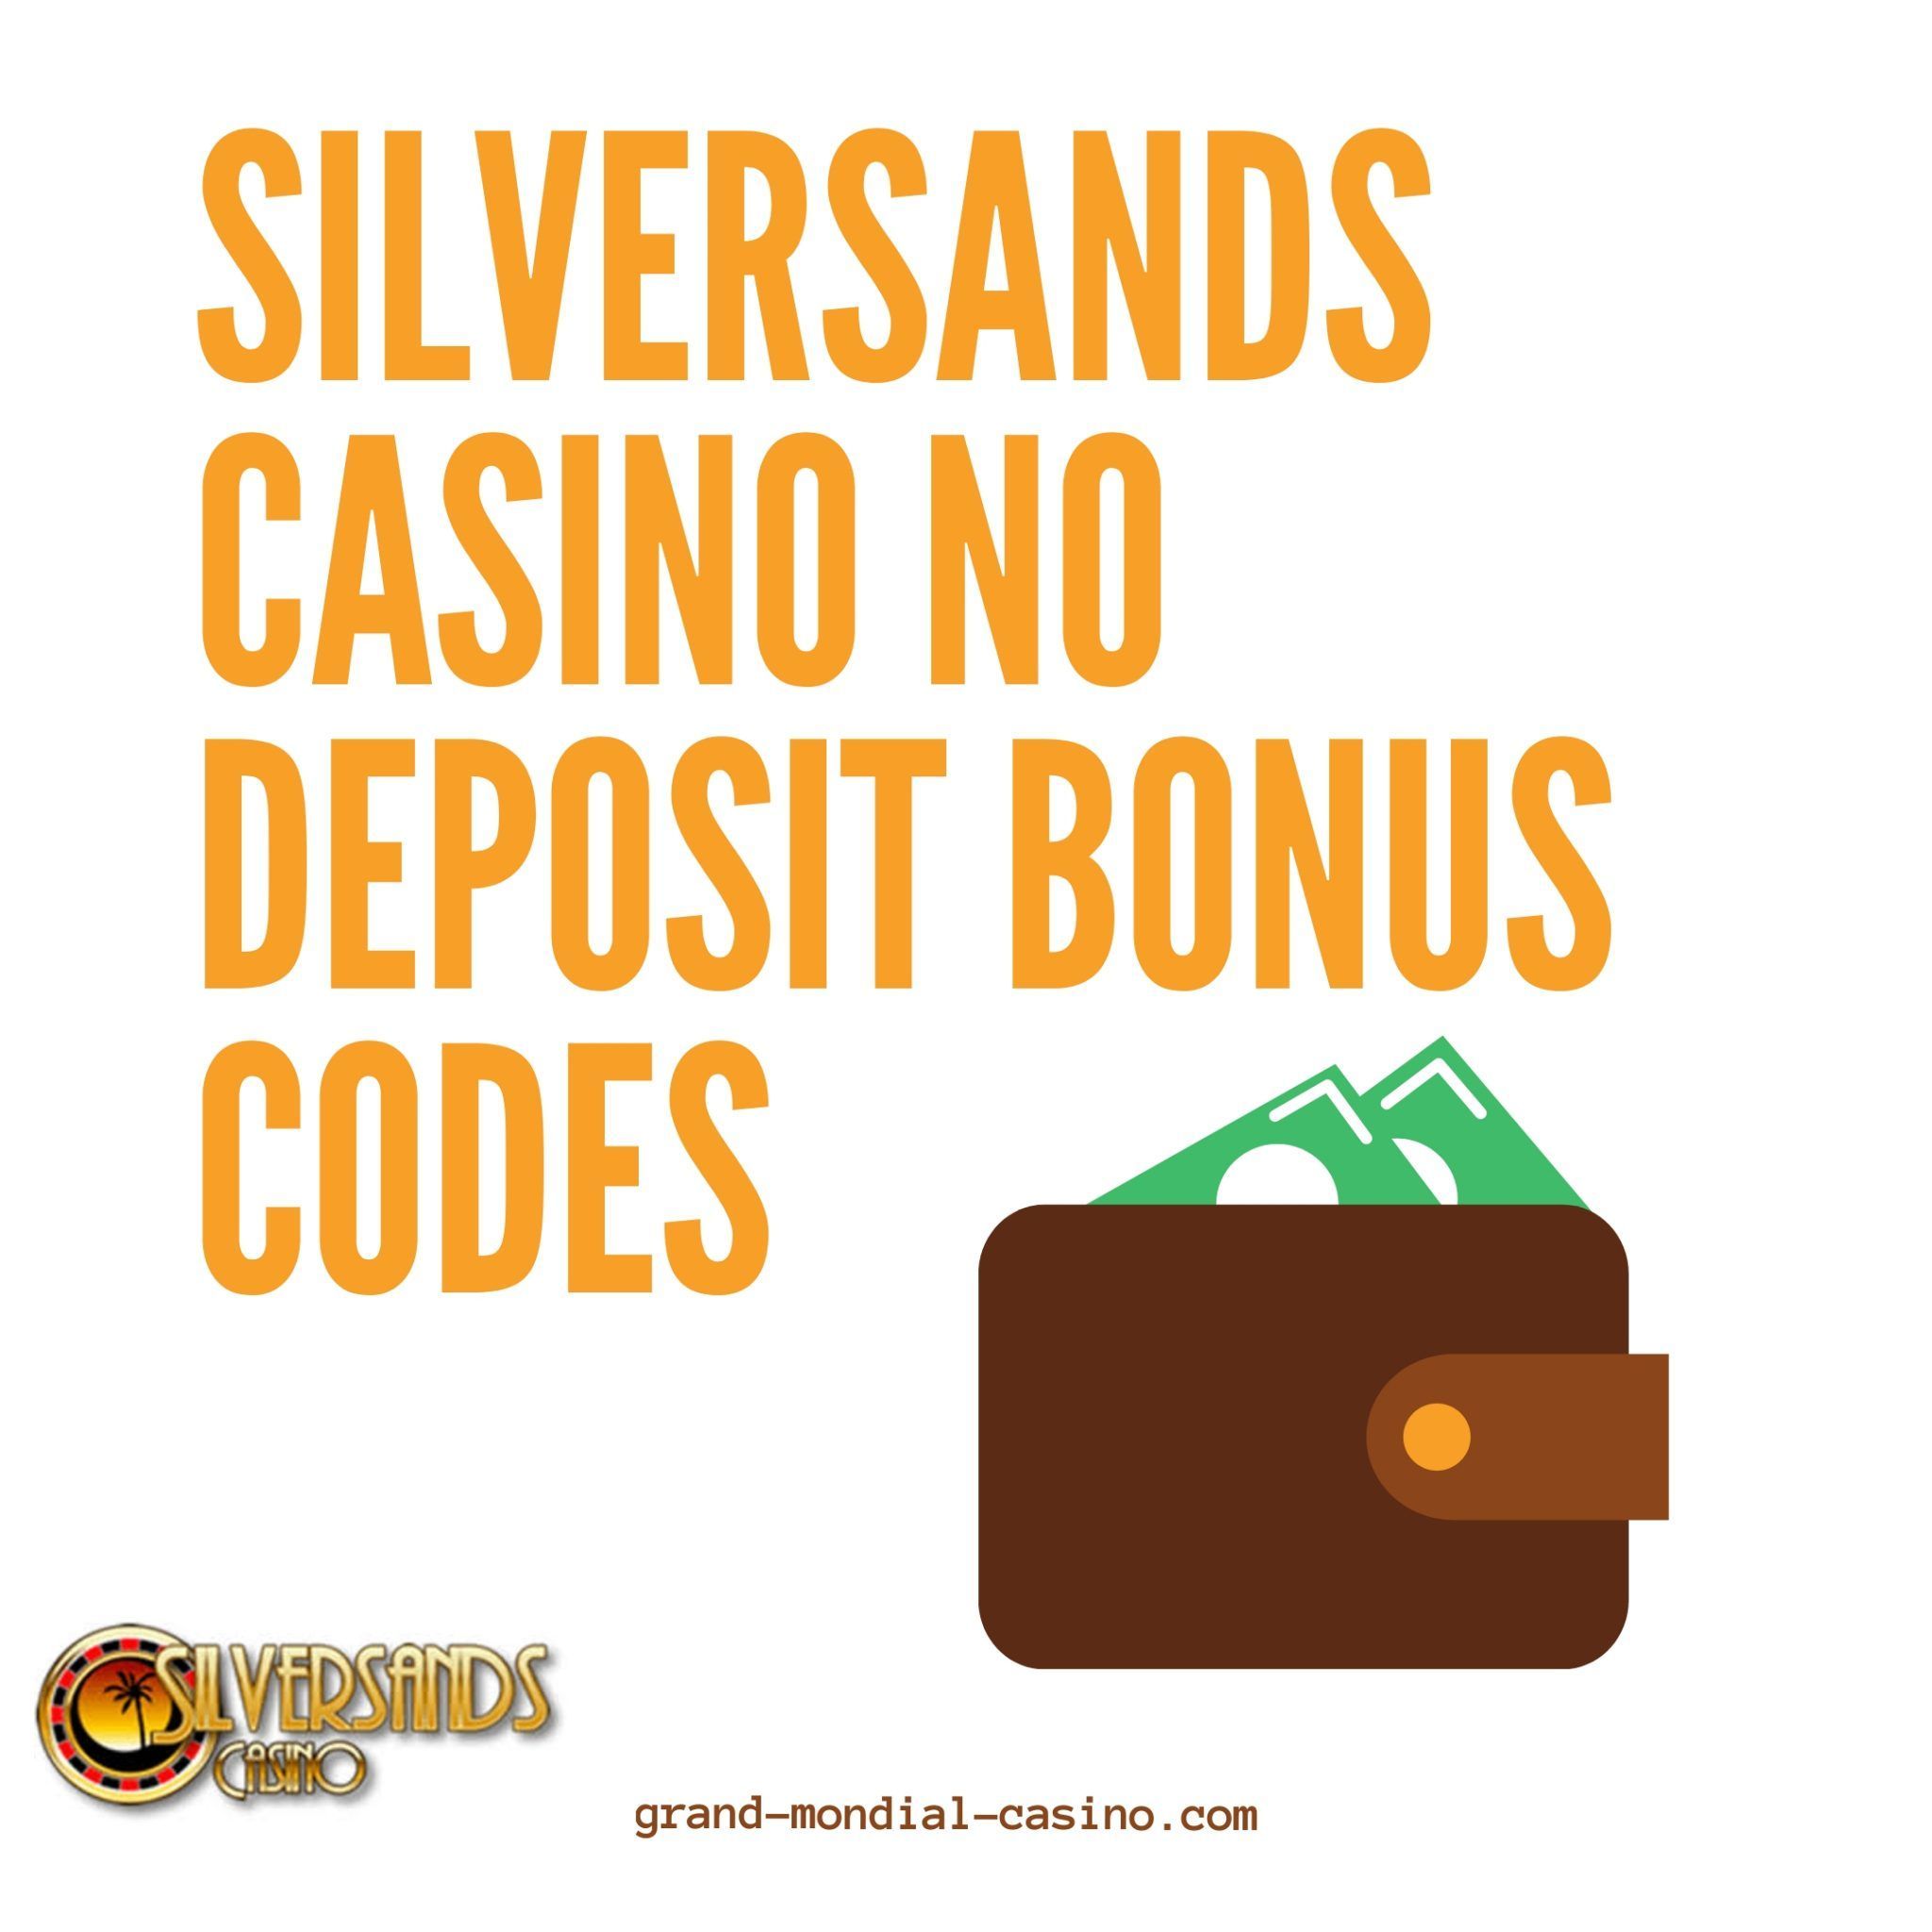 Silver sands poker app download